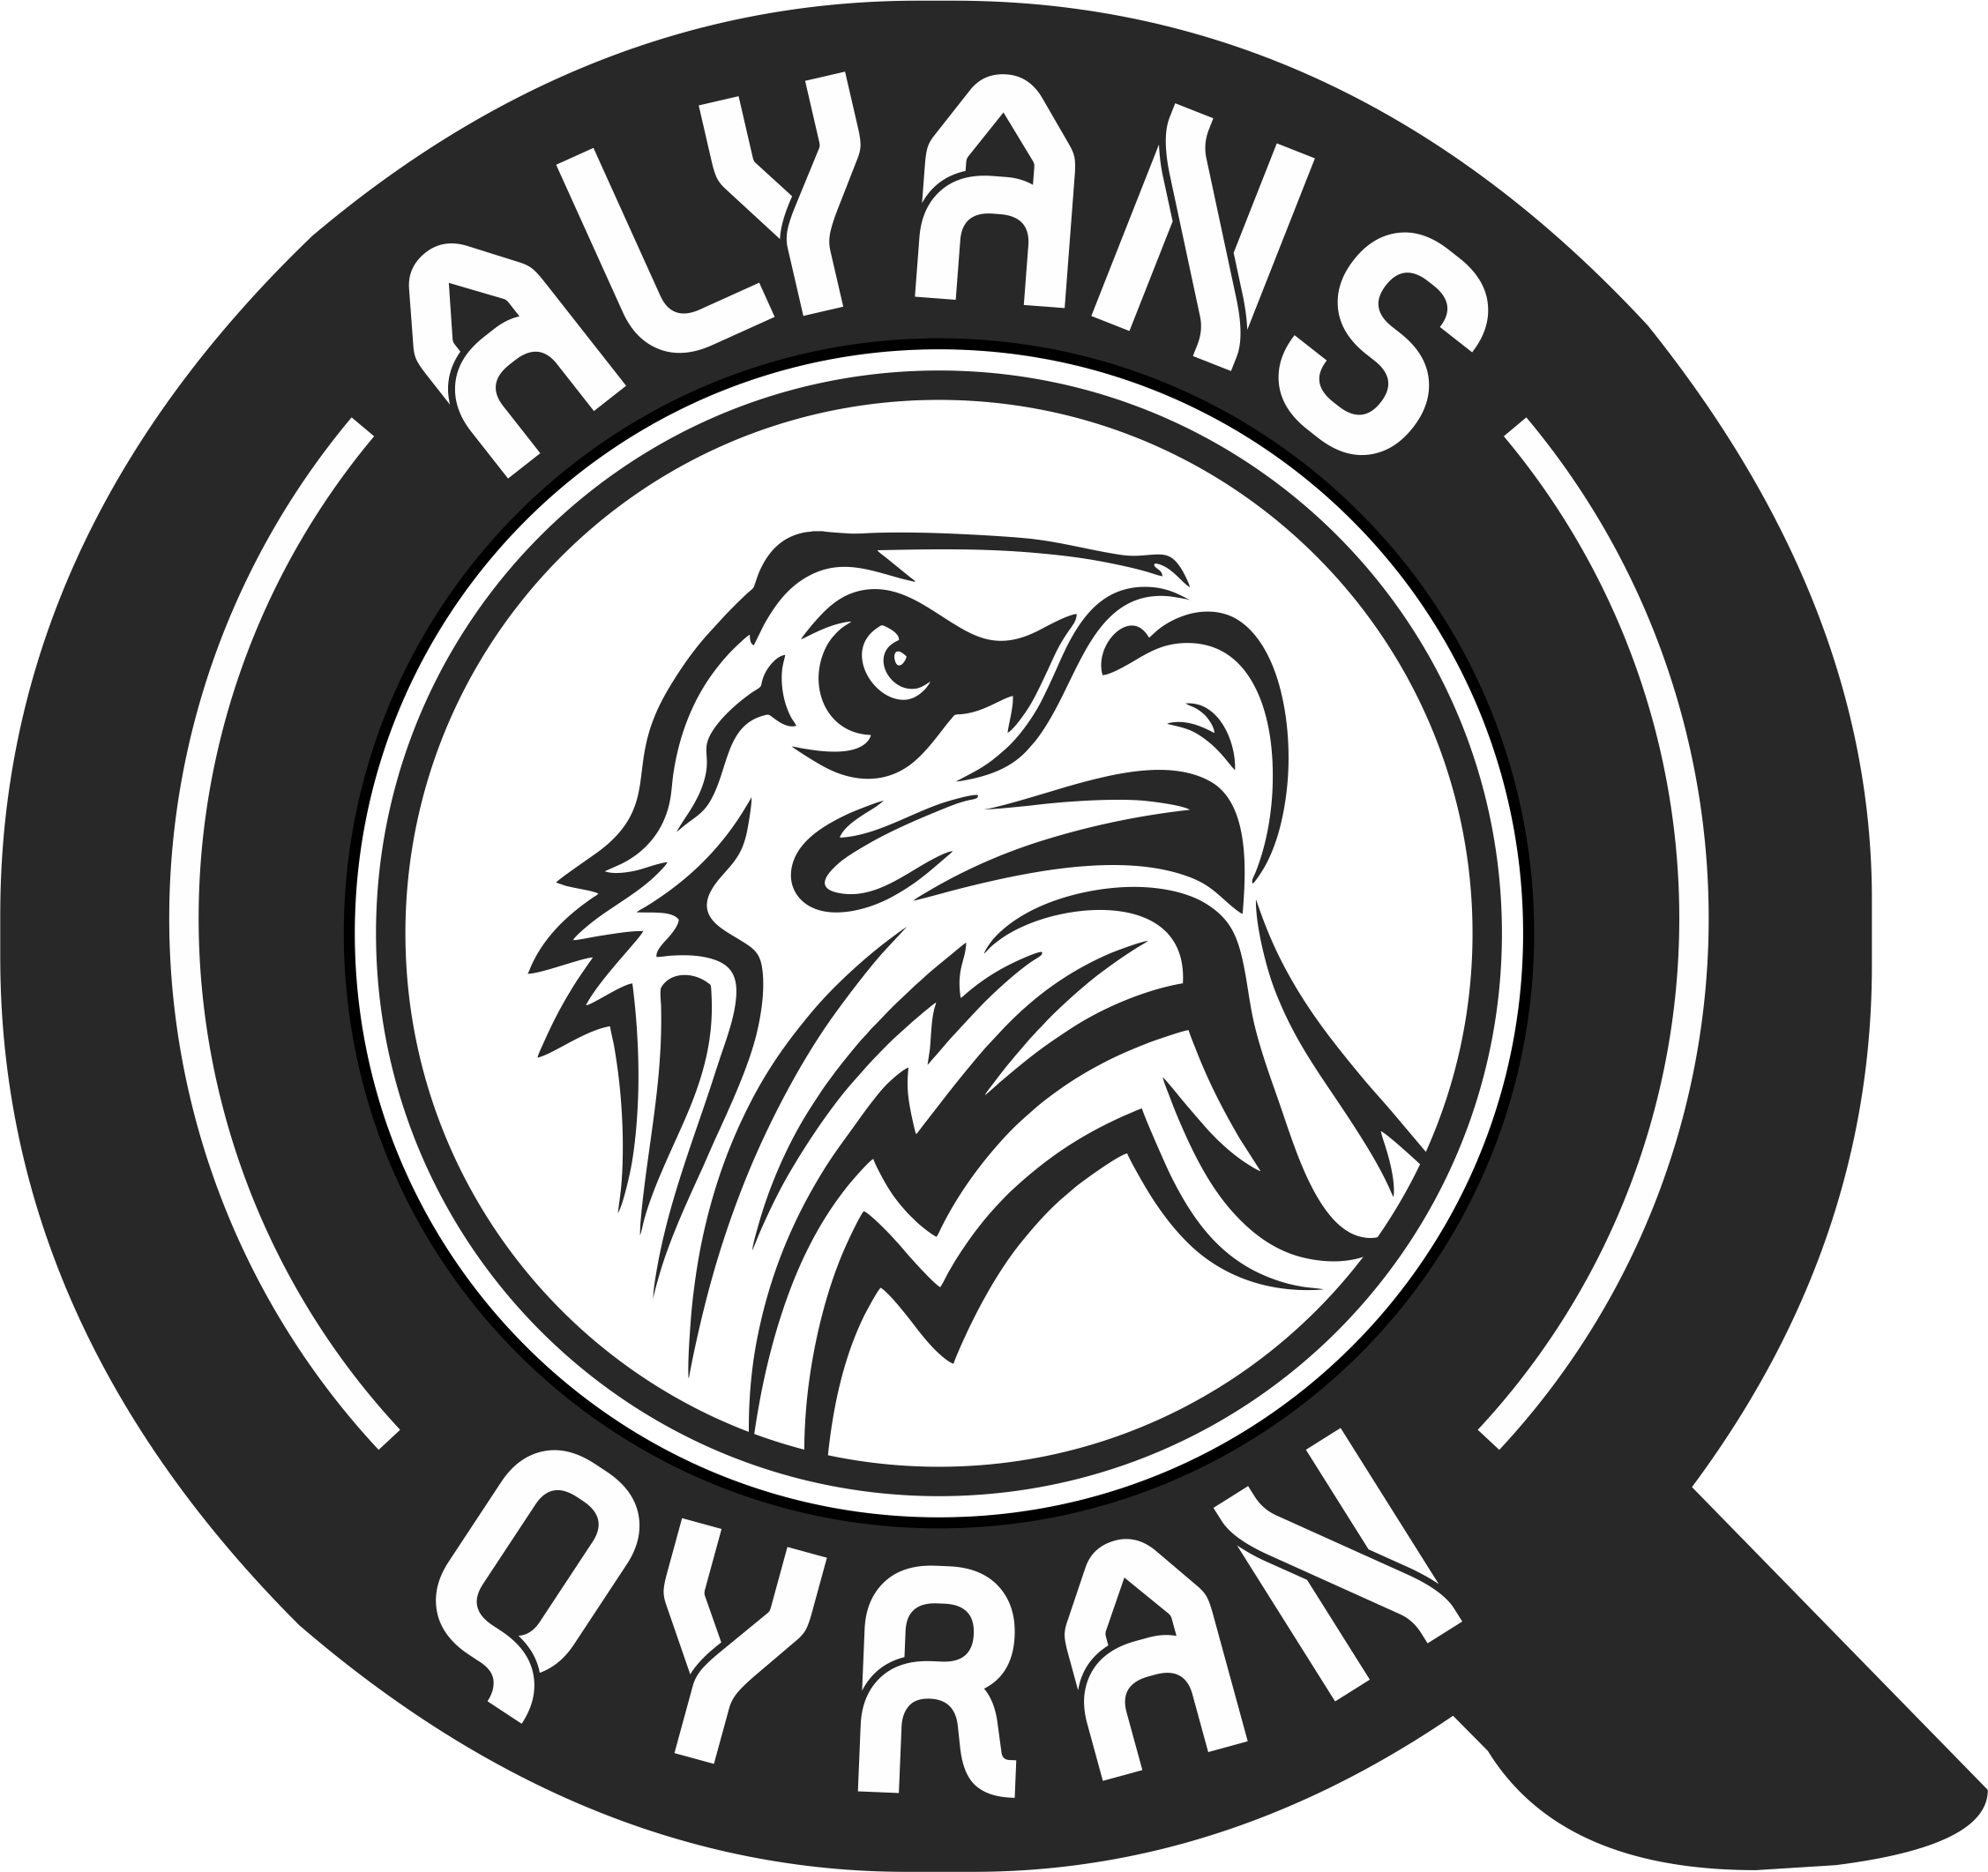 Alyans Qyran (Актау)